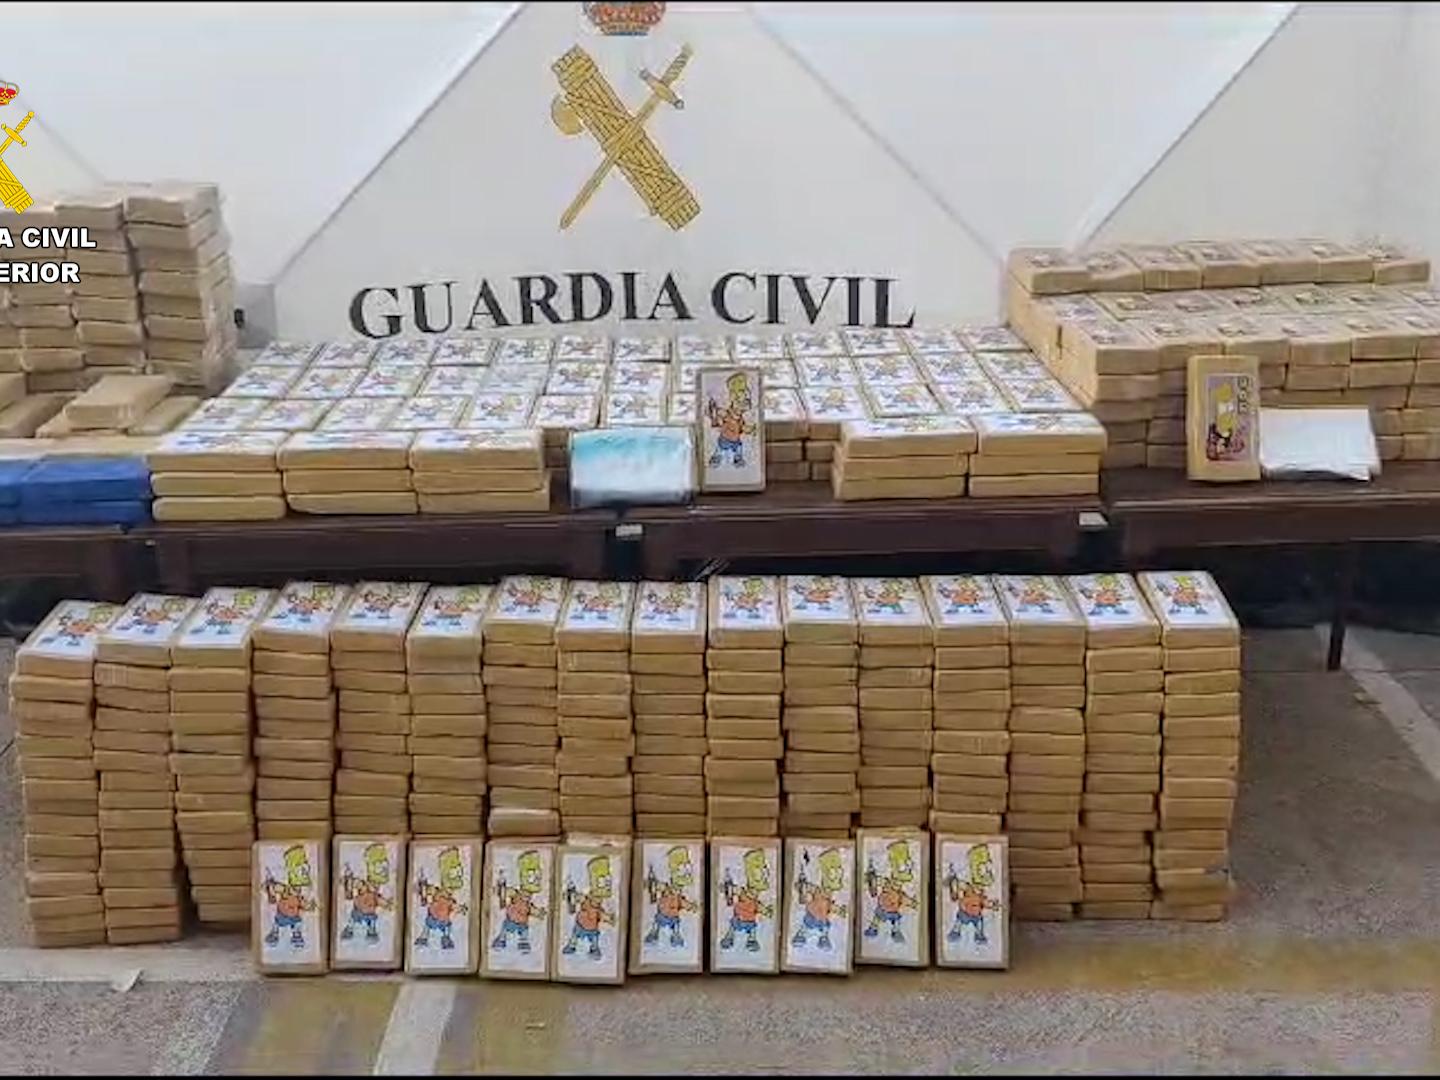 Imagen de los 600 kilos de cocaína Incautados, que encontraron ocultutos en un contenedor en un polígono de Quart de Poblet (Valencia)